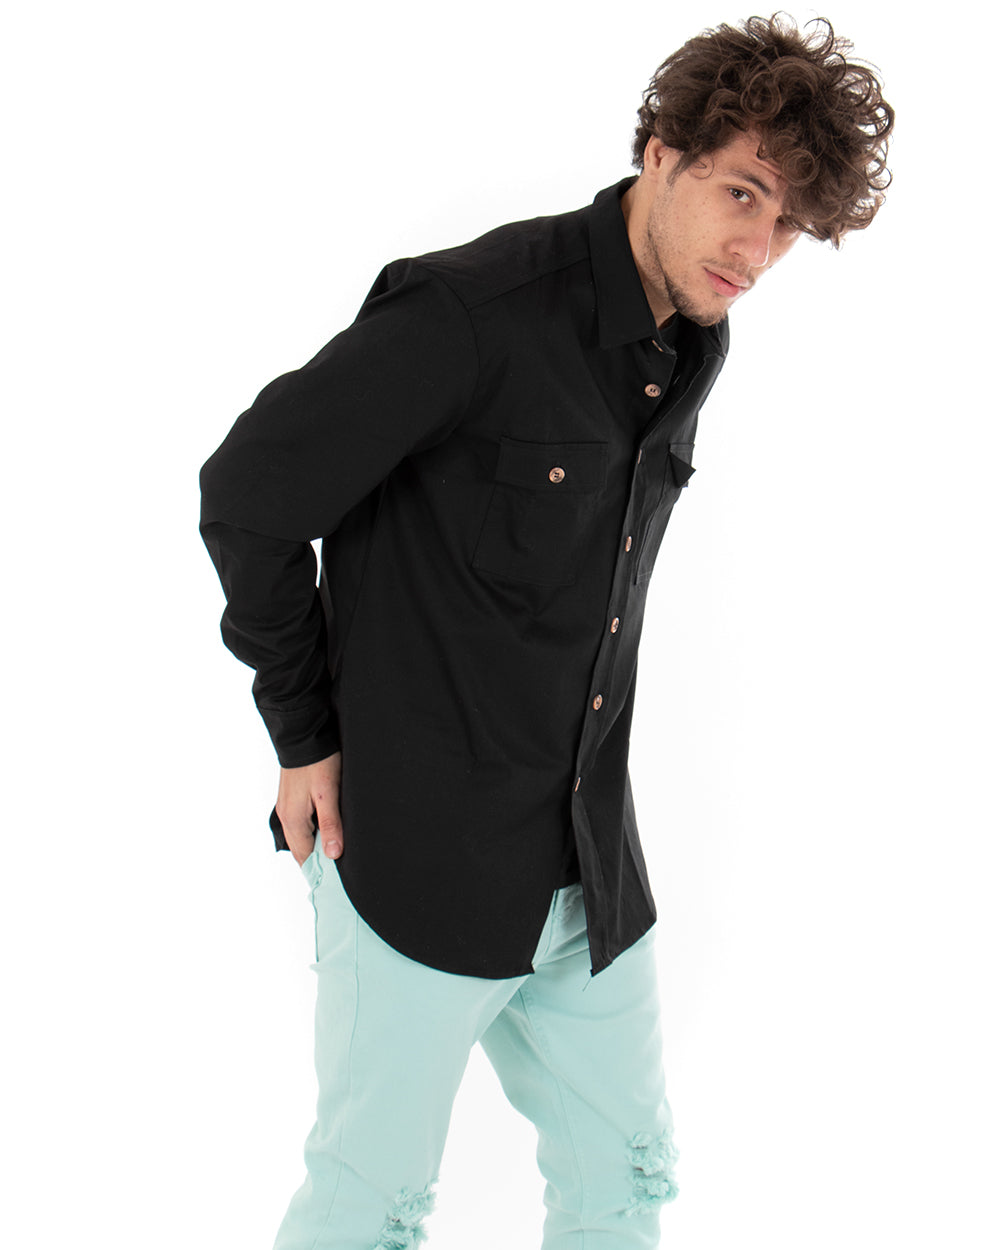 Camicia Uomo Con Colletto Manica Lunga Casual Cotone Nero GIOSAL-C1862A